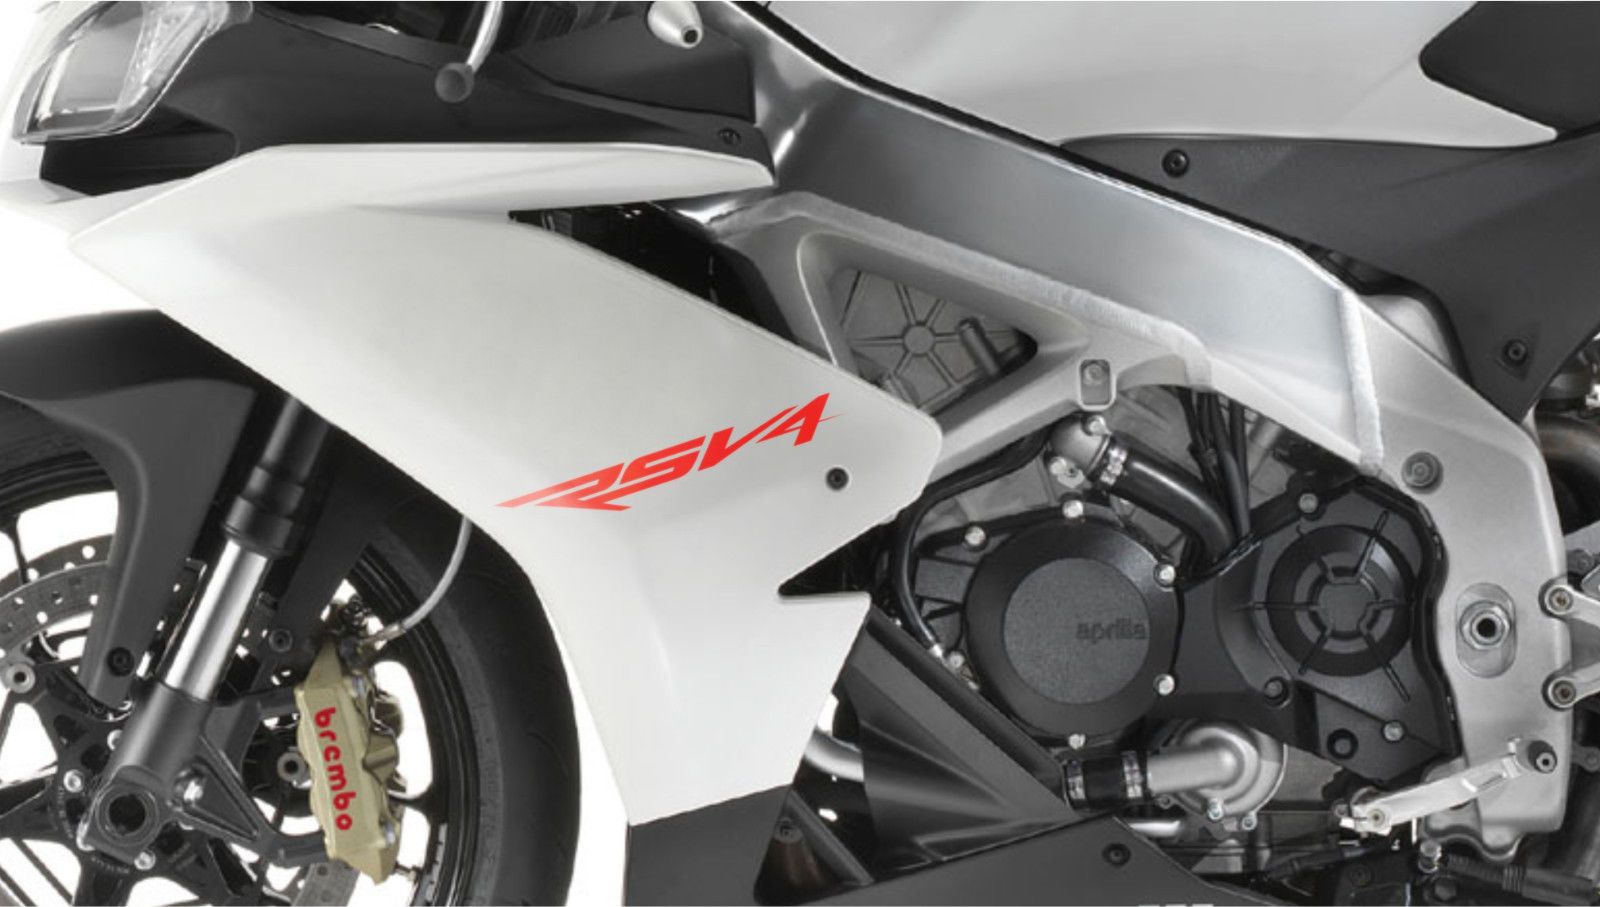 Autoadesivi Moto RSV4 Aprilia per moto per decalcomania carenatura